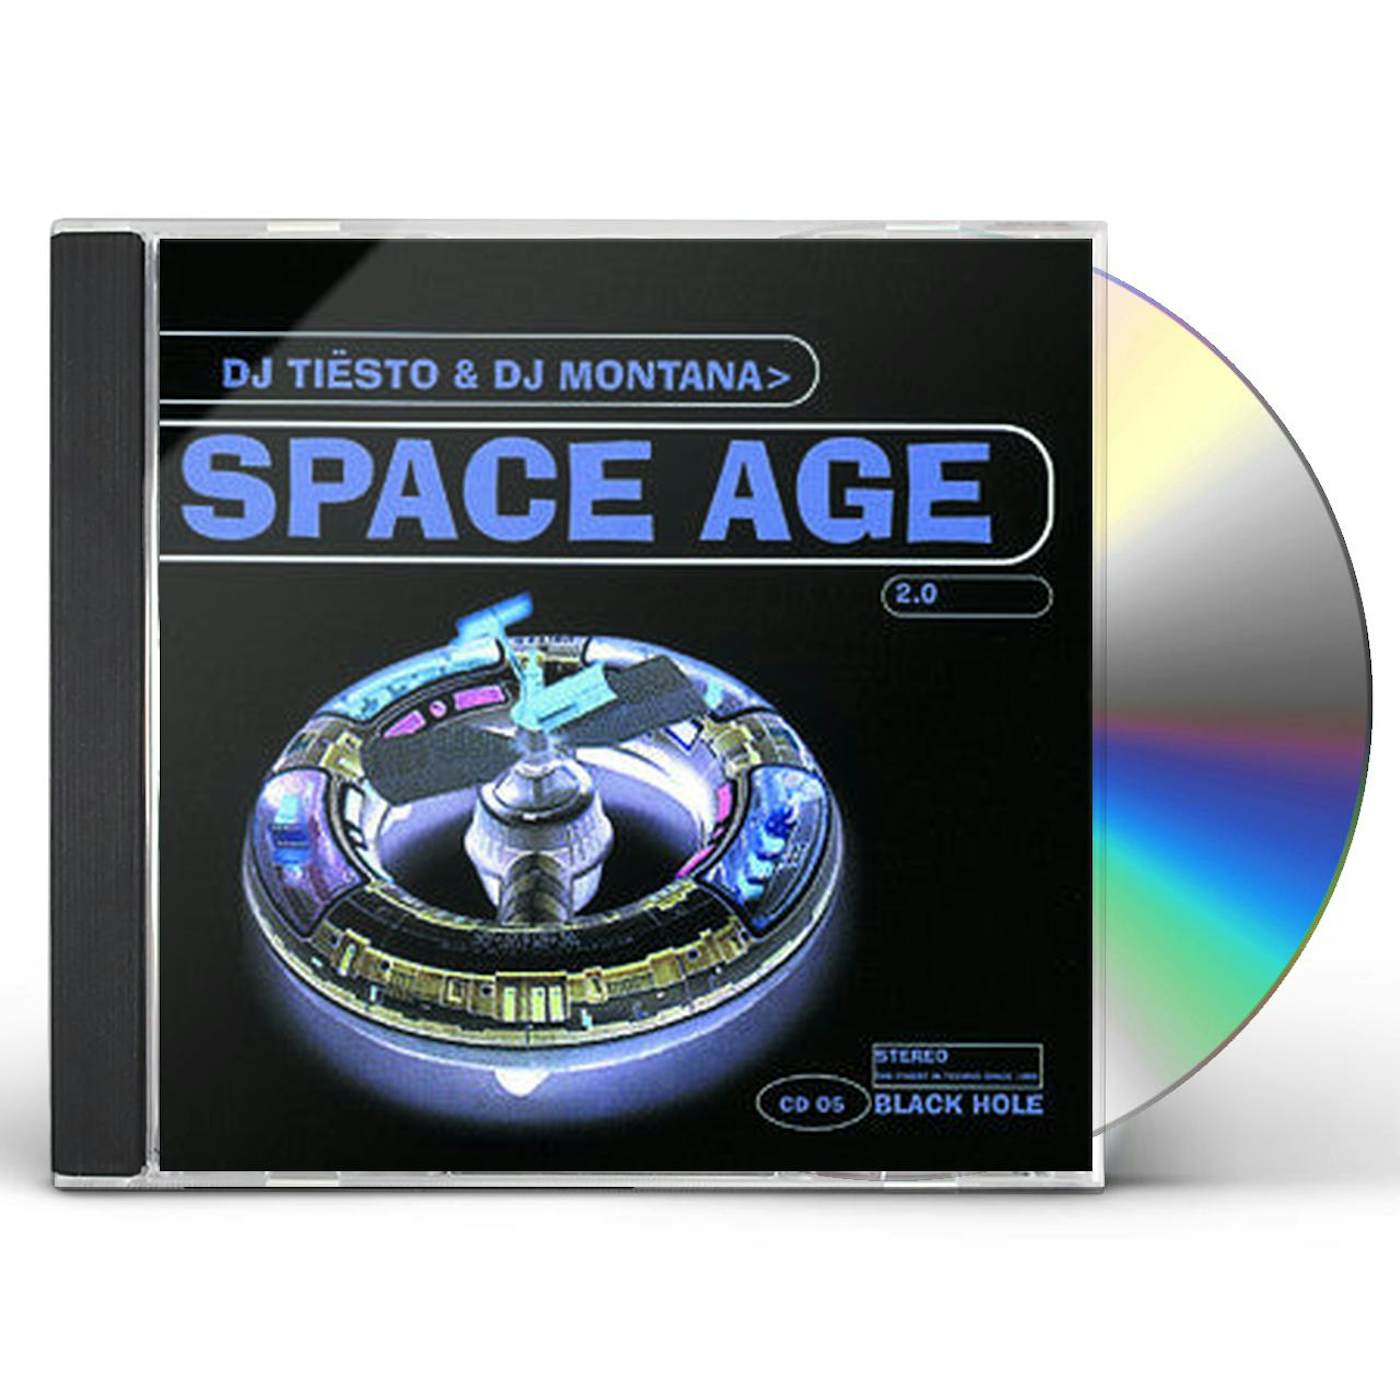 Tiësto & DJ Montana - Space Age 2.0 CD